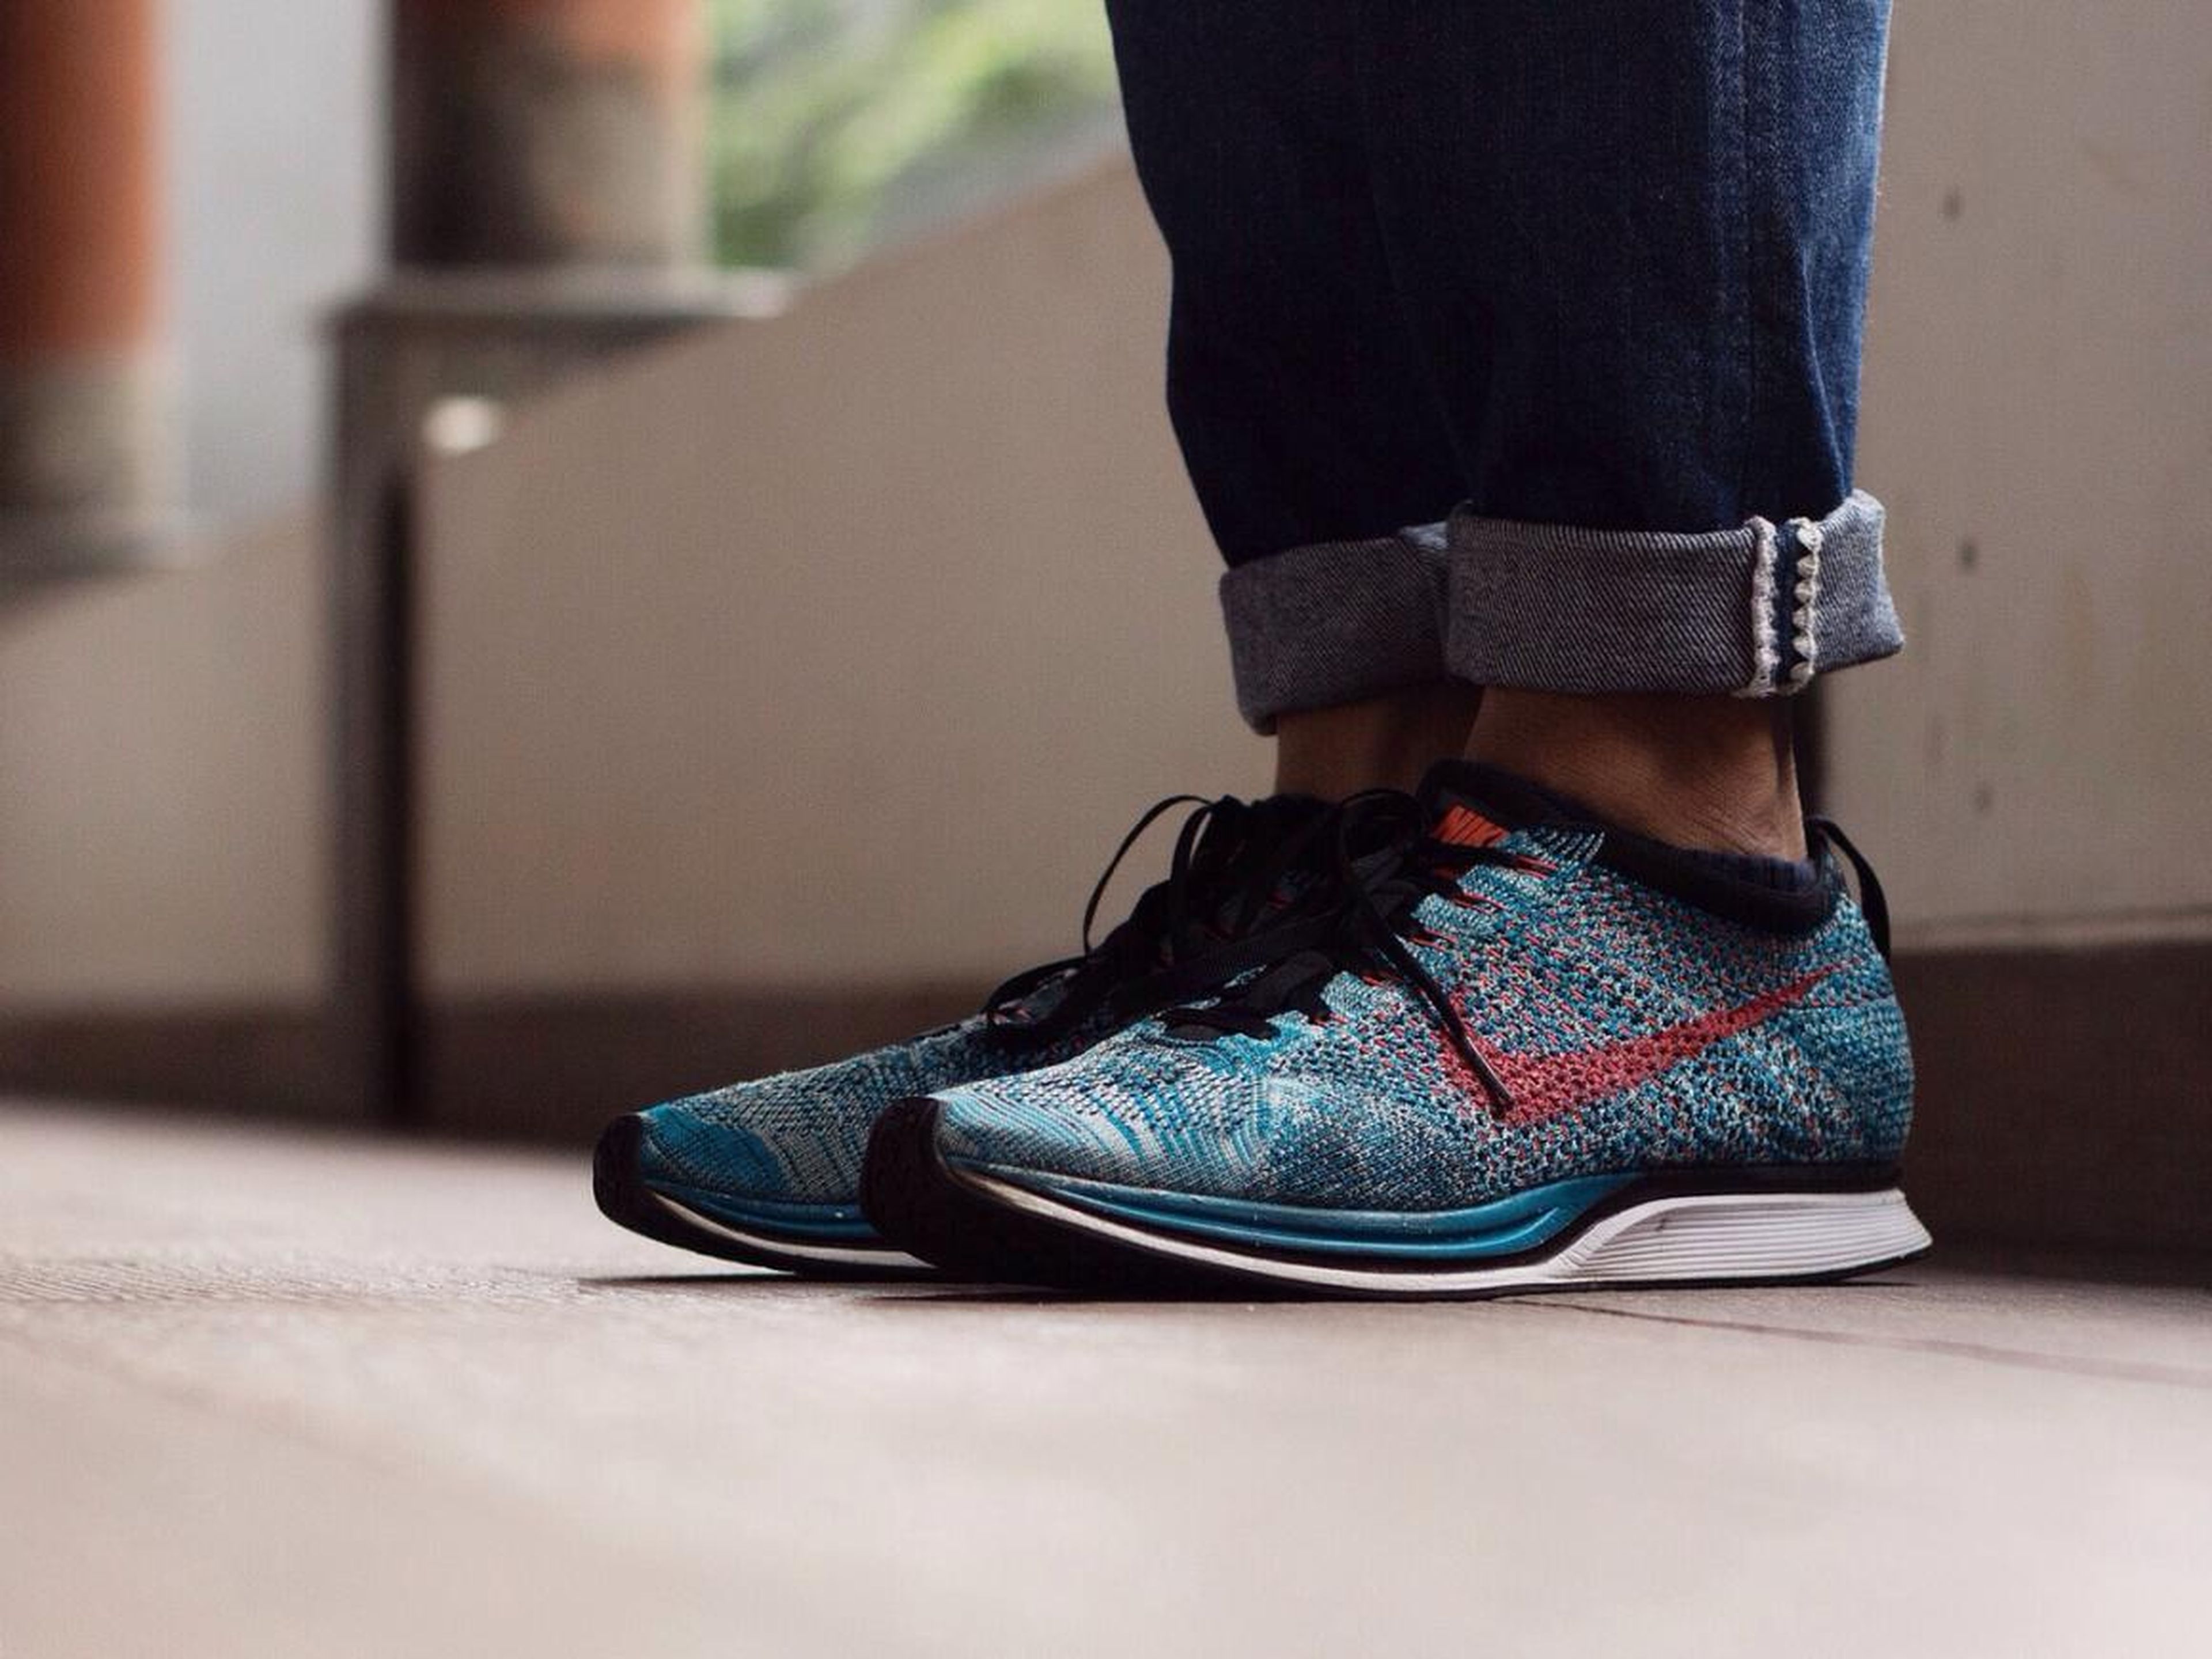 8. Nike Flyknit cambió la industria de las zapatillas deportivas con su avance textil.